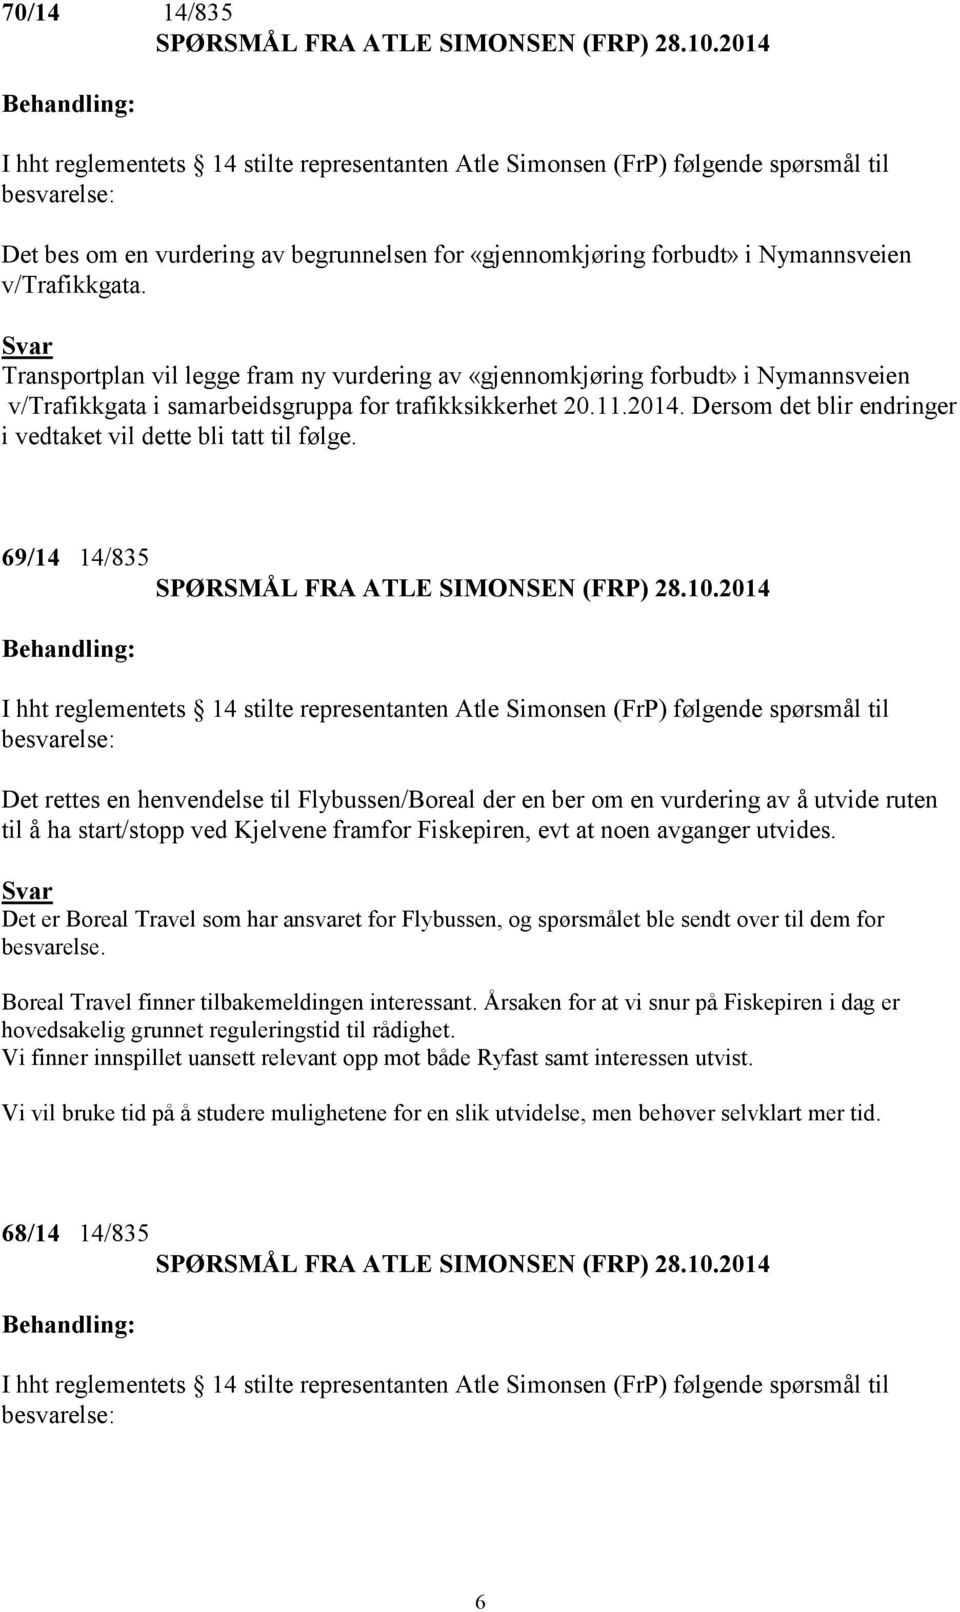 v/trafikkgata. Transportplan vil legge fram ny vurdering av «gjennomkjøring forbudt» i Nymannsveien v/trafikkgata i samarbeidsgruppa for trafikksikkerhet 20.11.2014.